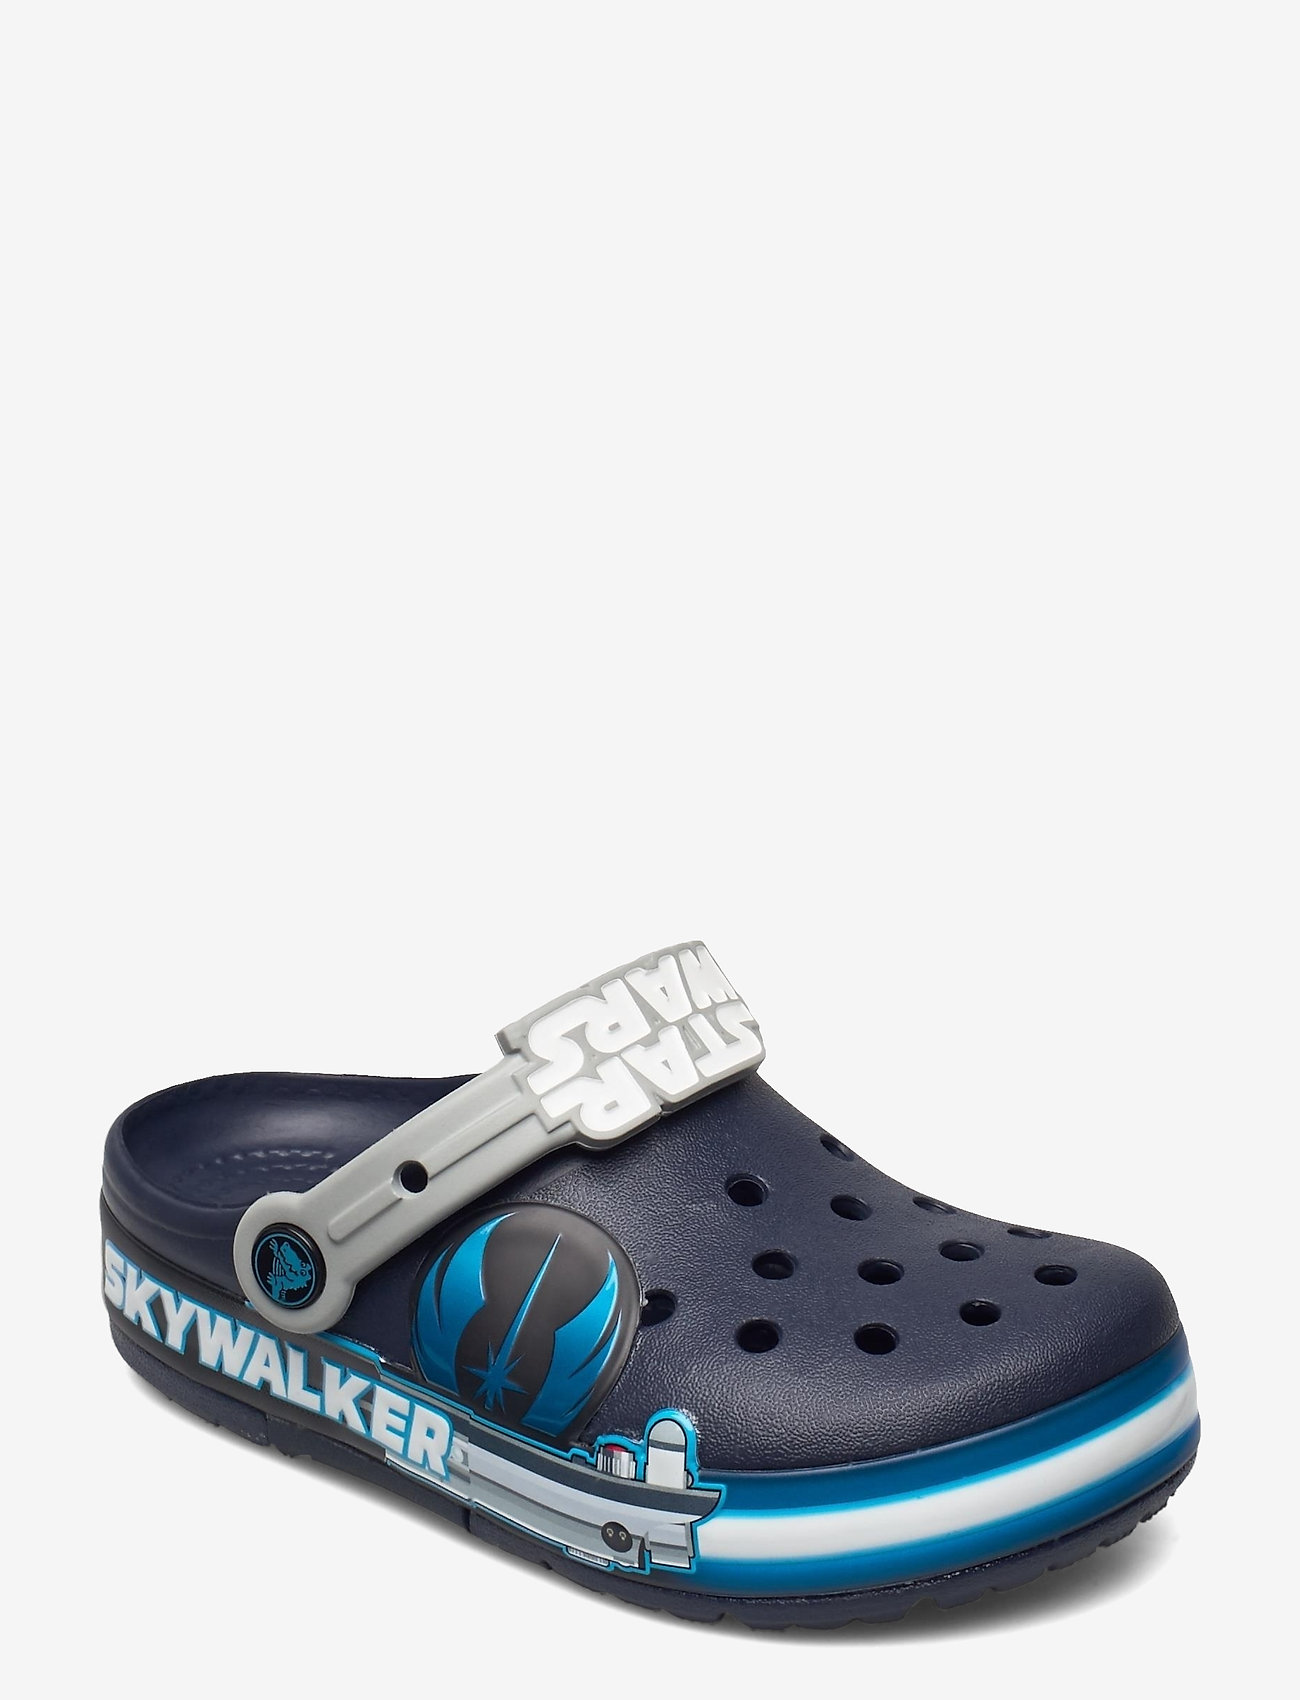 luke skywalker crocs